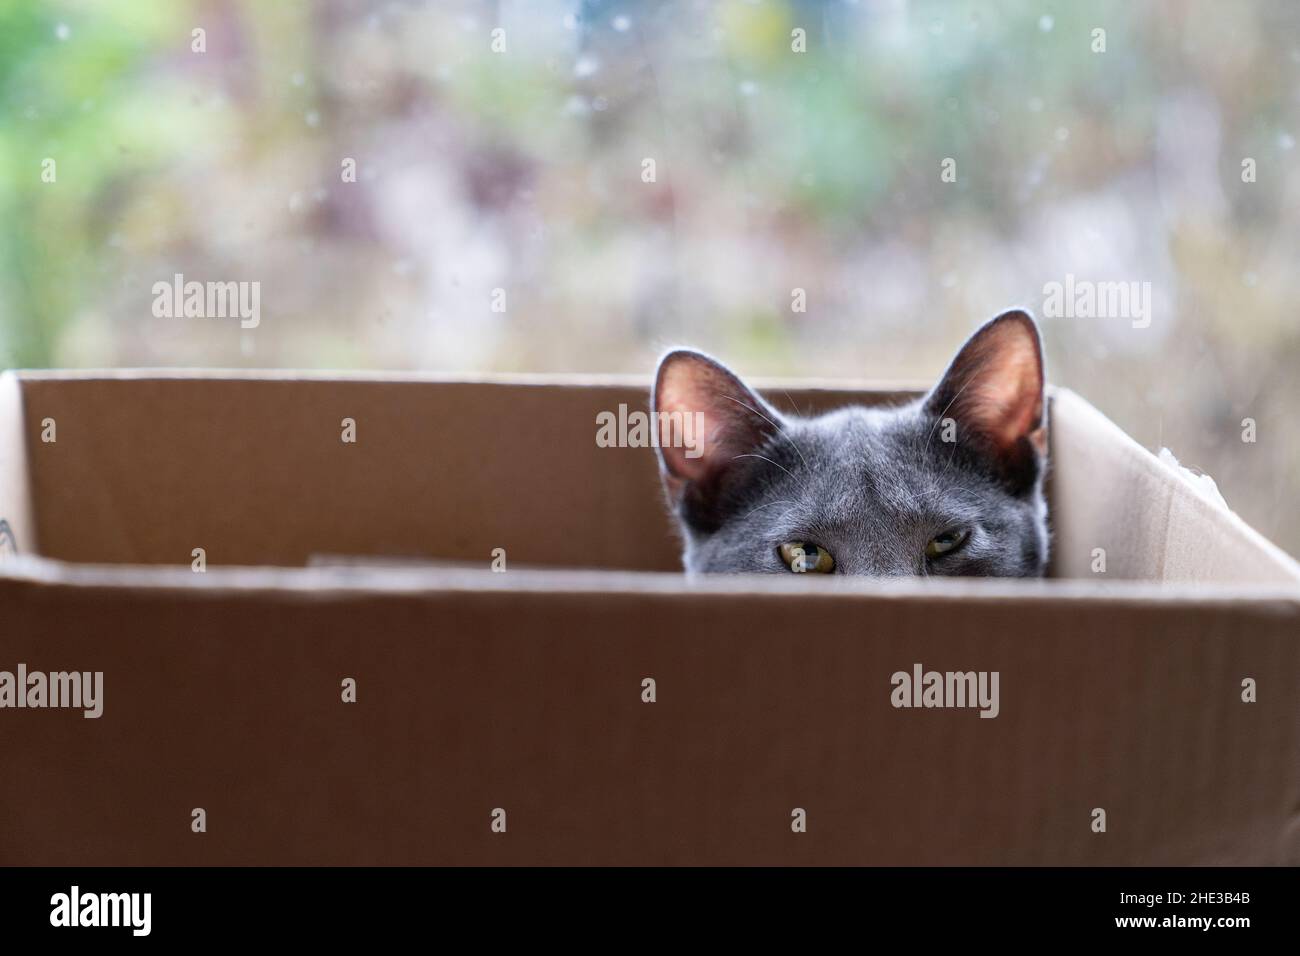 Un gato gris en una caja de cartón mirando sobre el borde Foto de stock